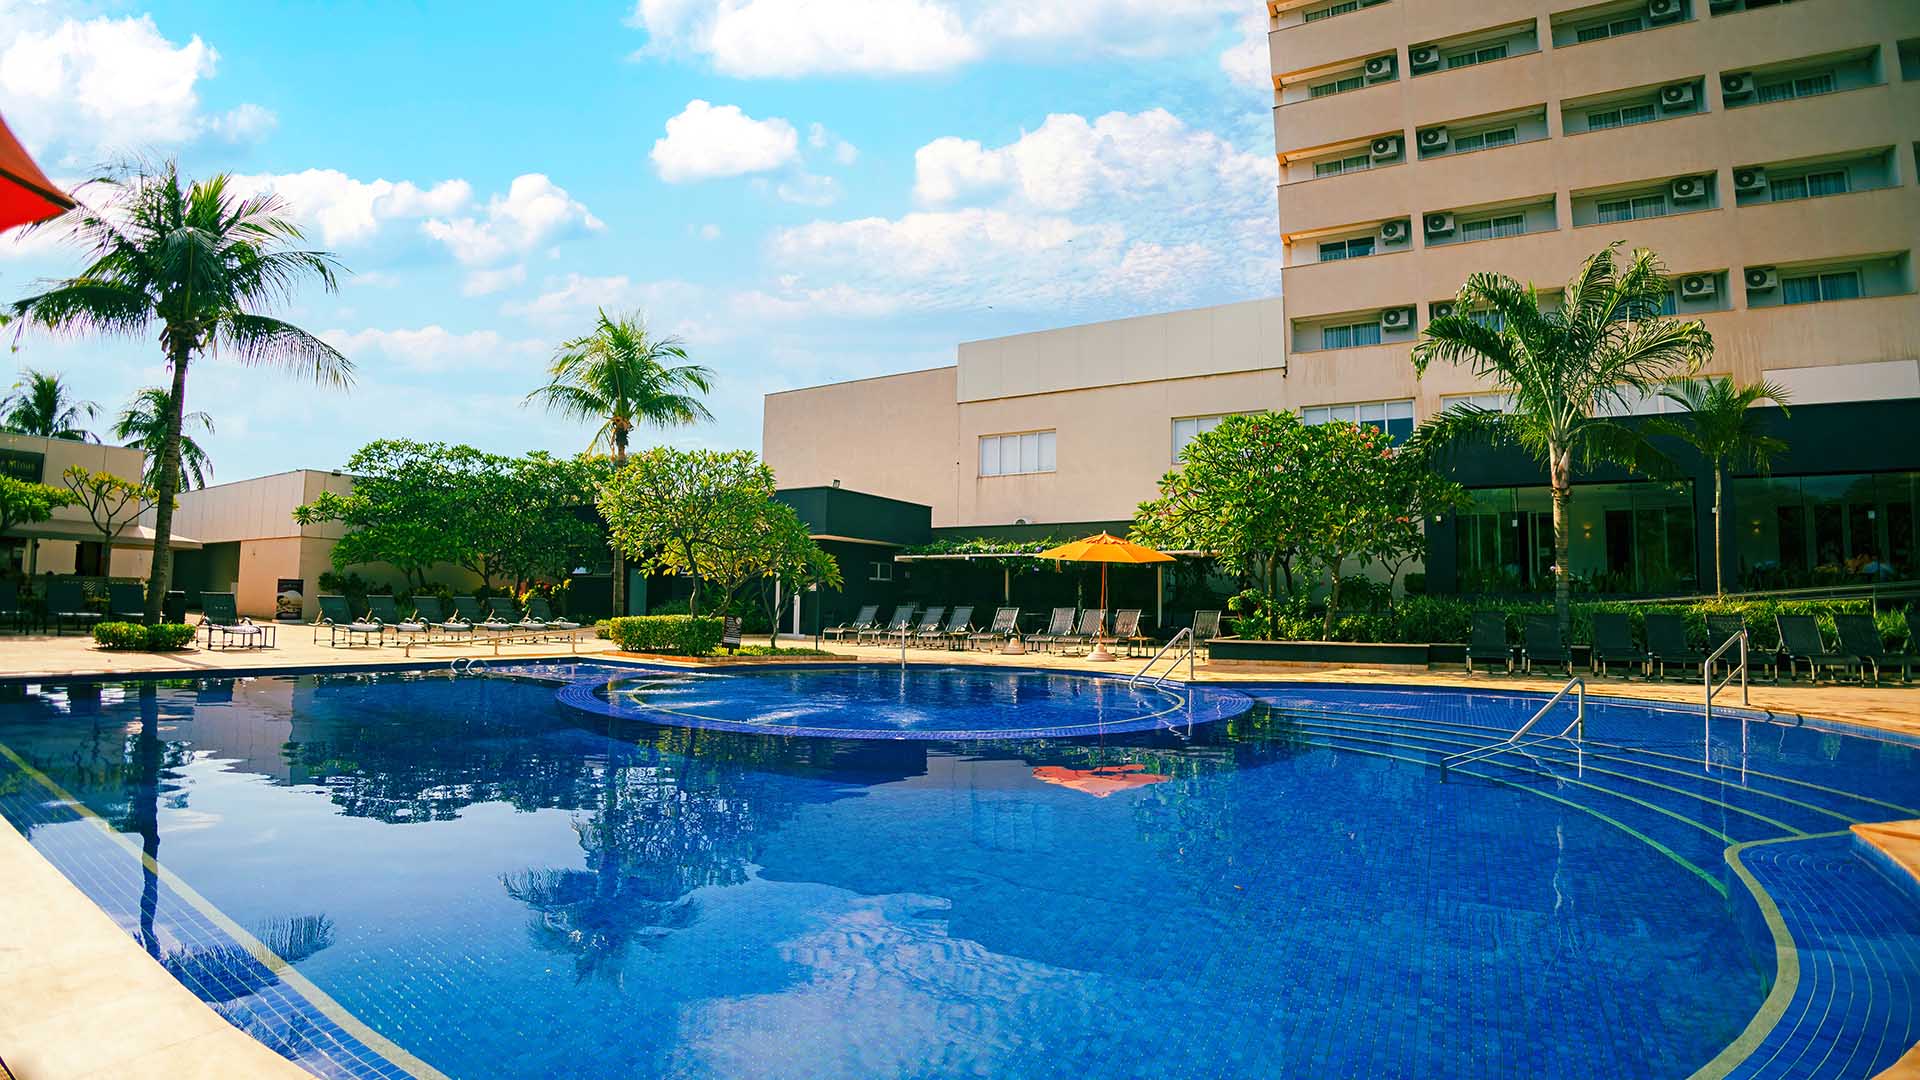 piscina grande do celebration resort olímpia, coqueiros e o prédio no horizonte com um céu claro e ensolarado